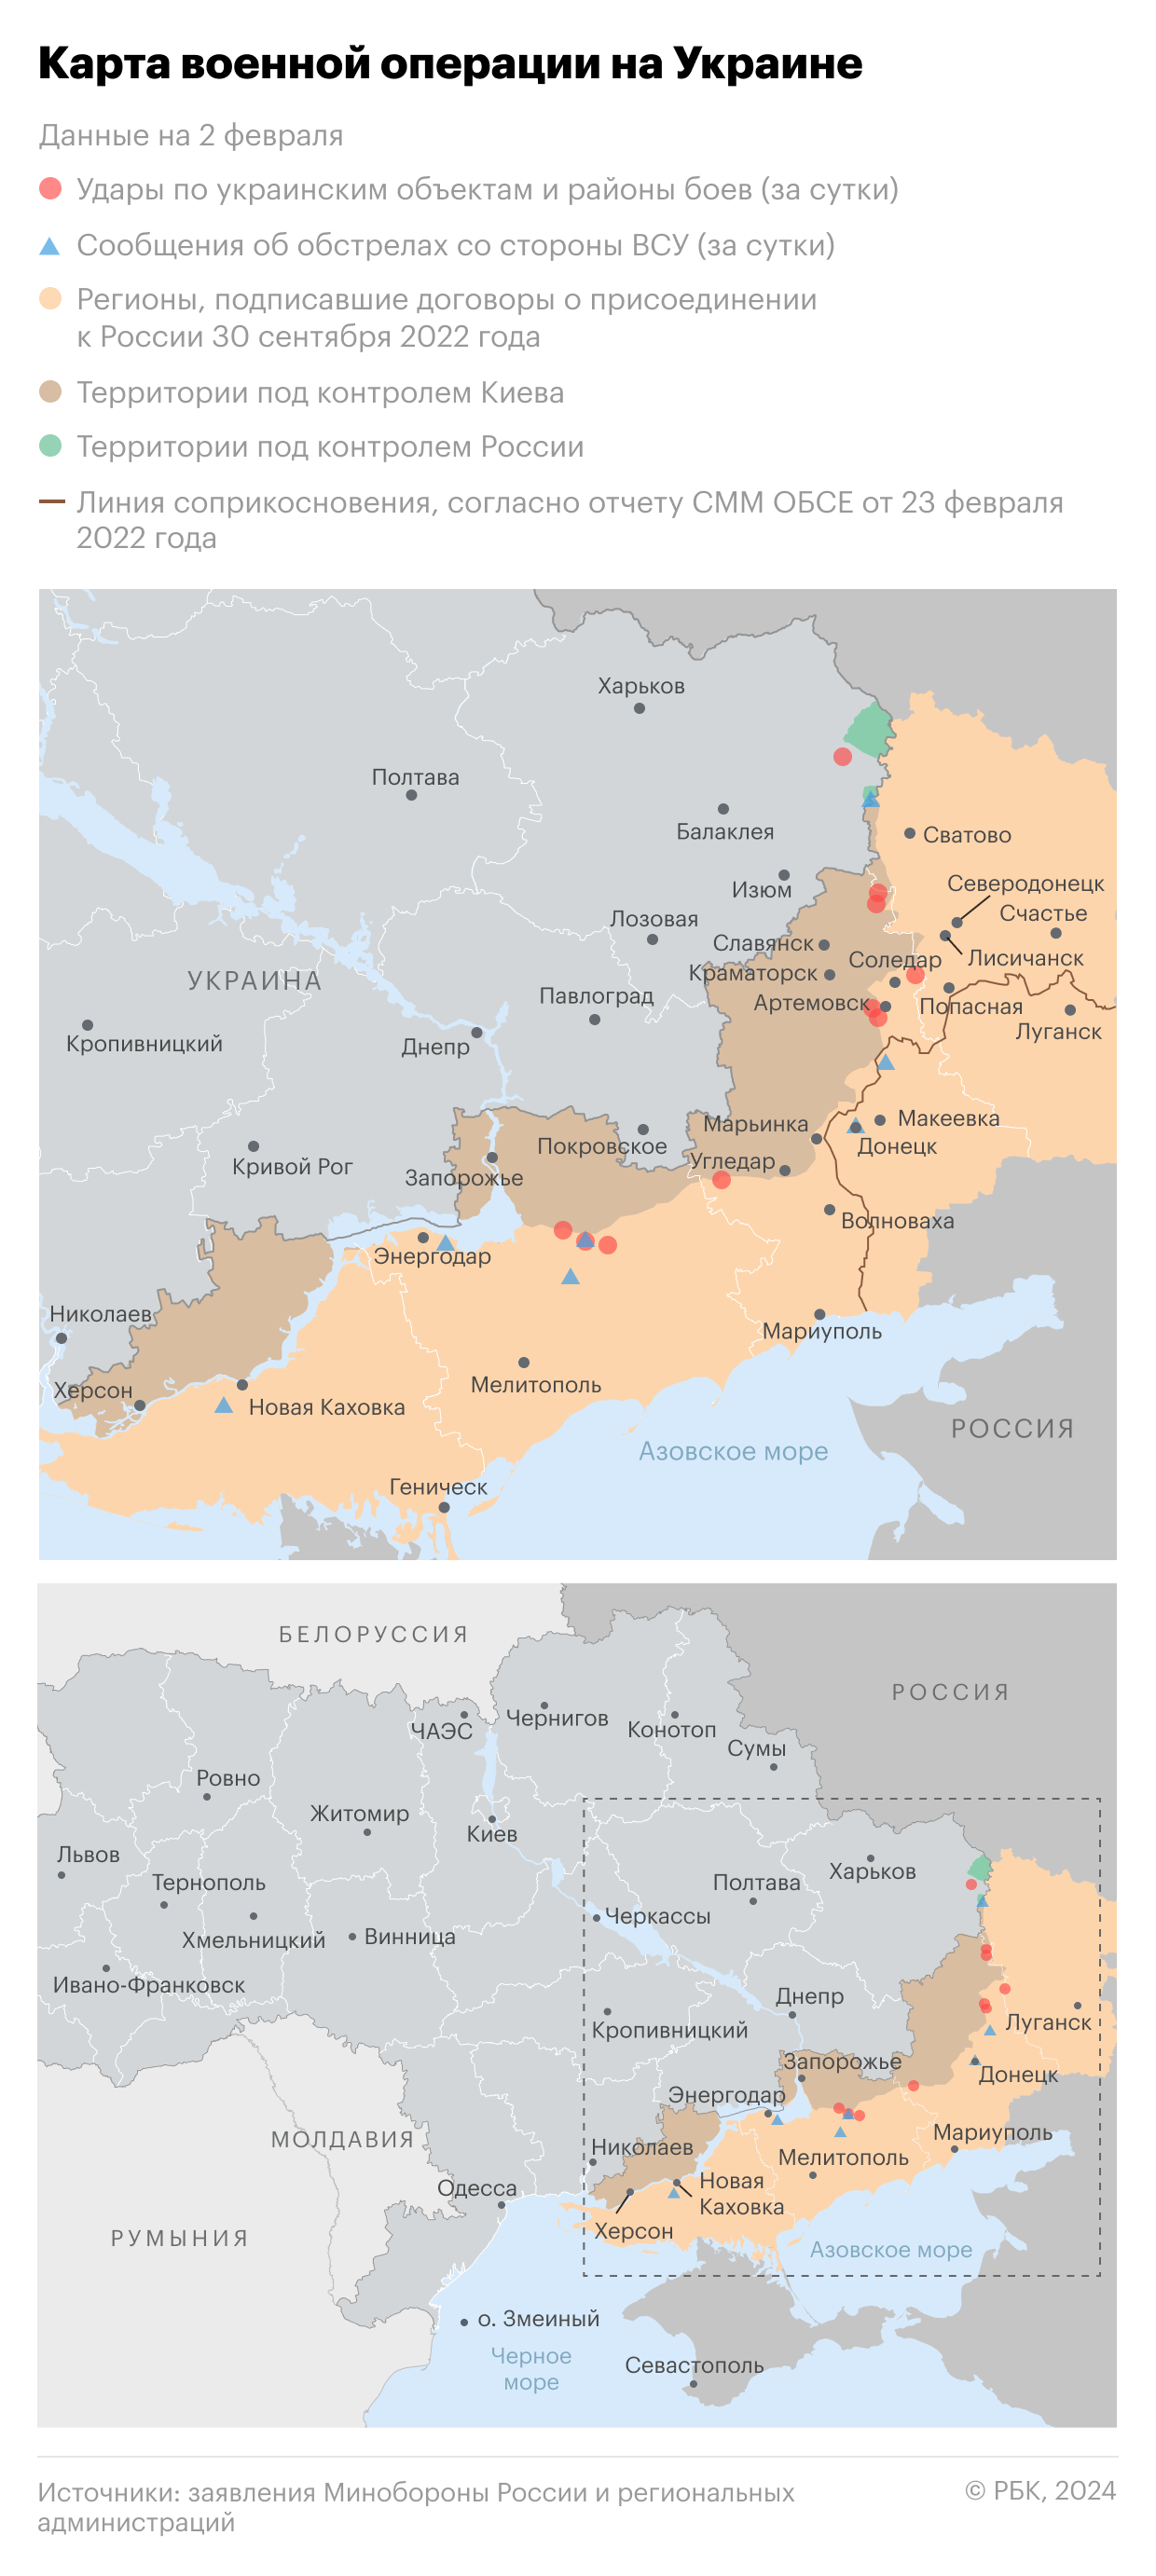 Военная операция на Украине. Карта на 2 февраля